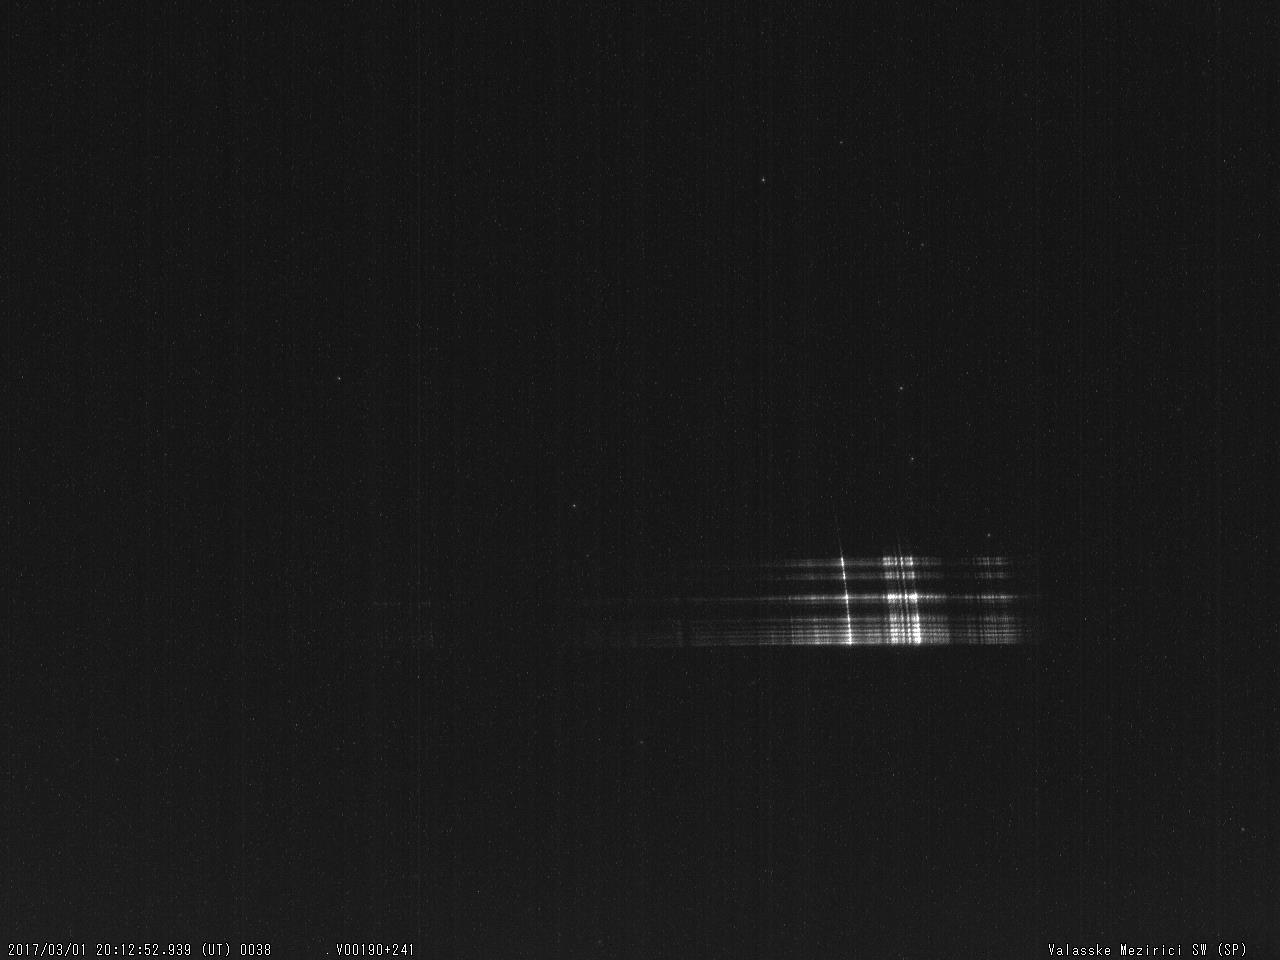 Obr. 11: Spektrum jasného meteoru 20170301_201252, spektrograf SPNE. Autor: Hvězdárna Valašské Meziříčí